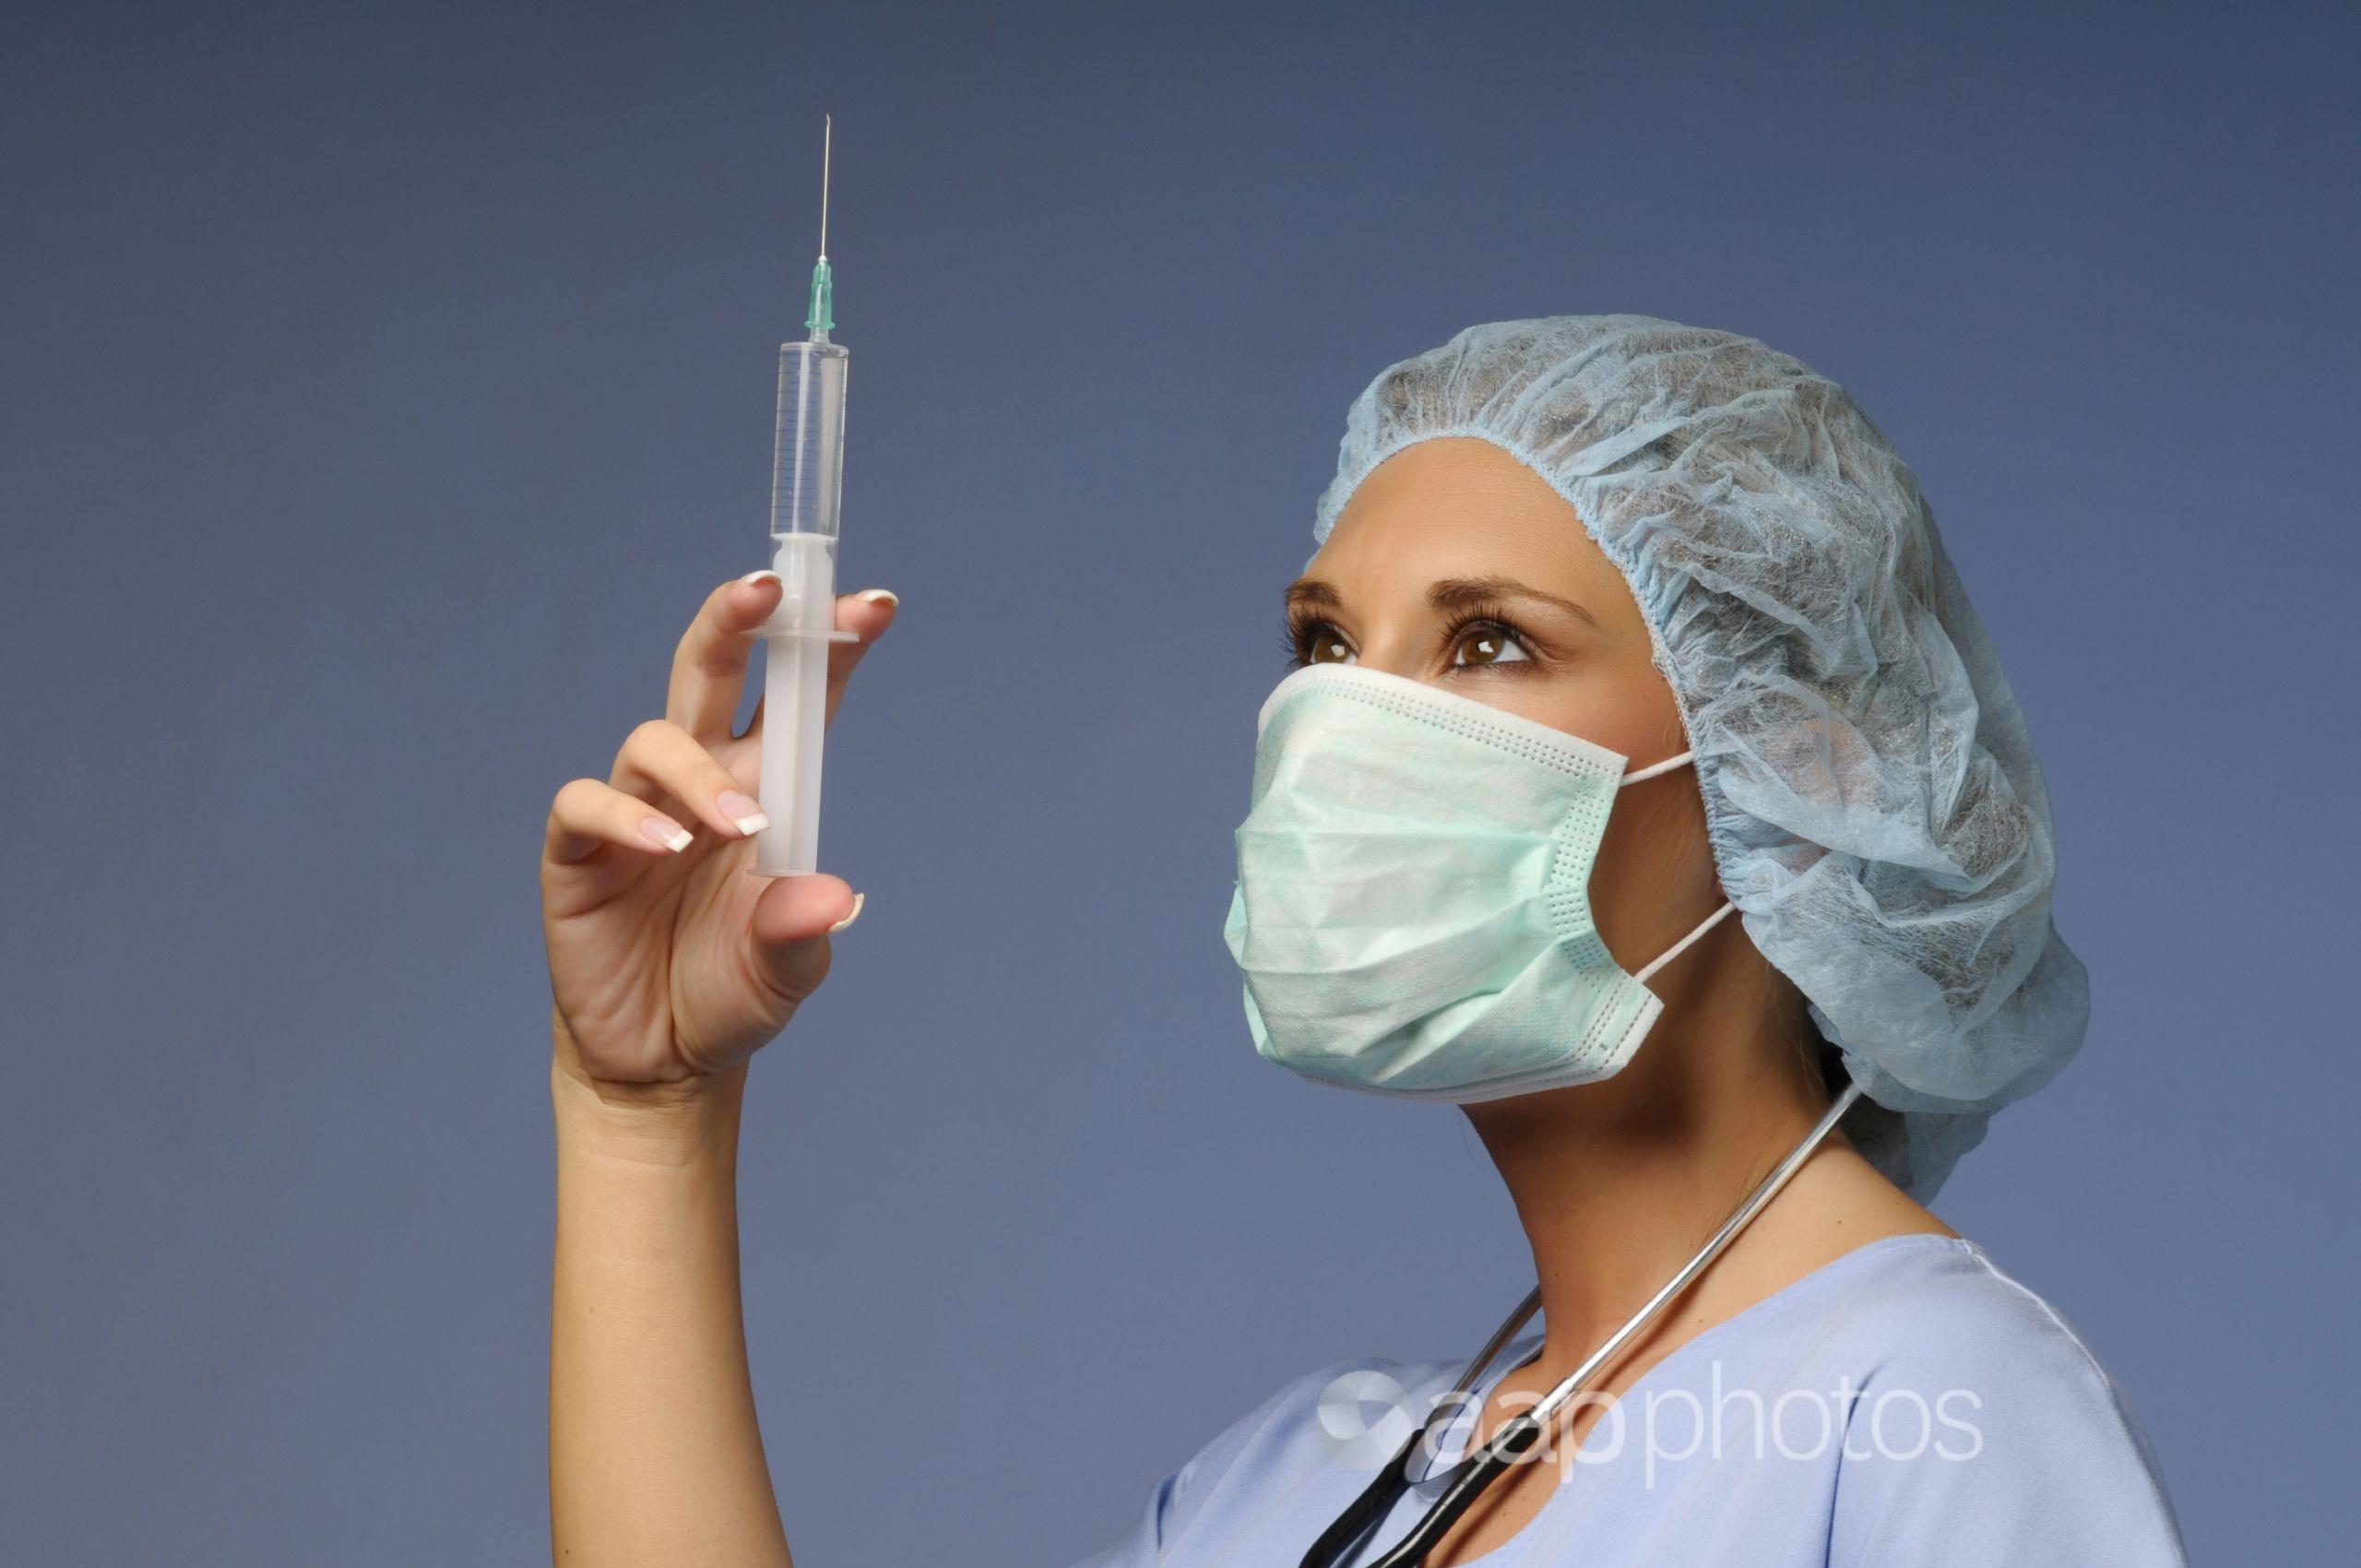 Nurse holding syringe